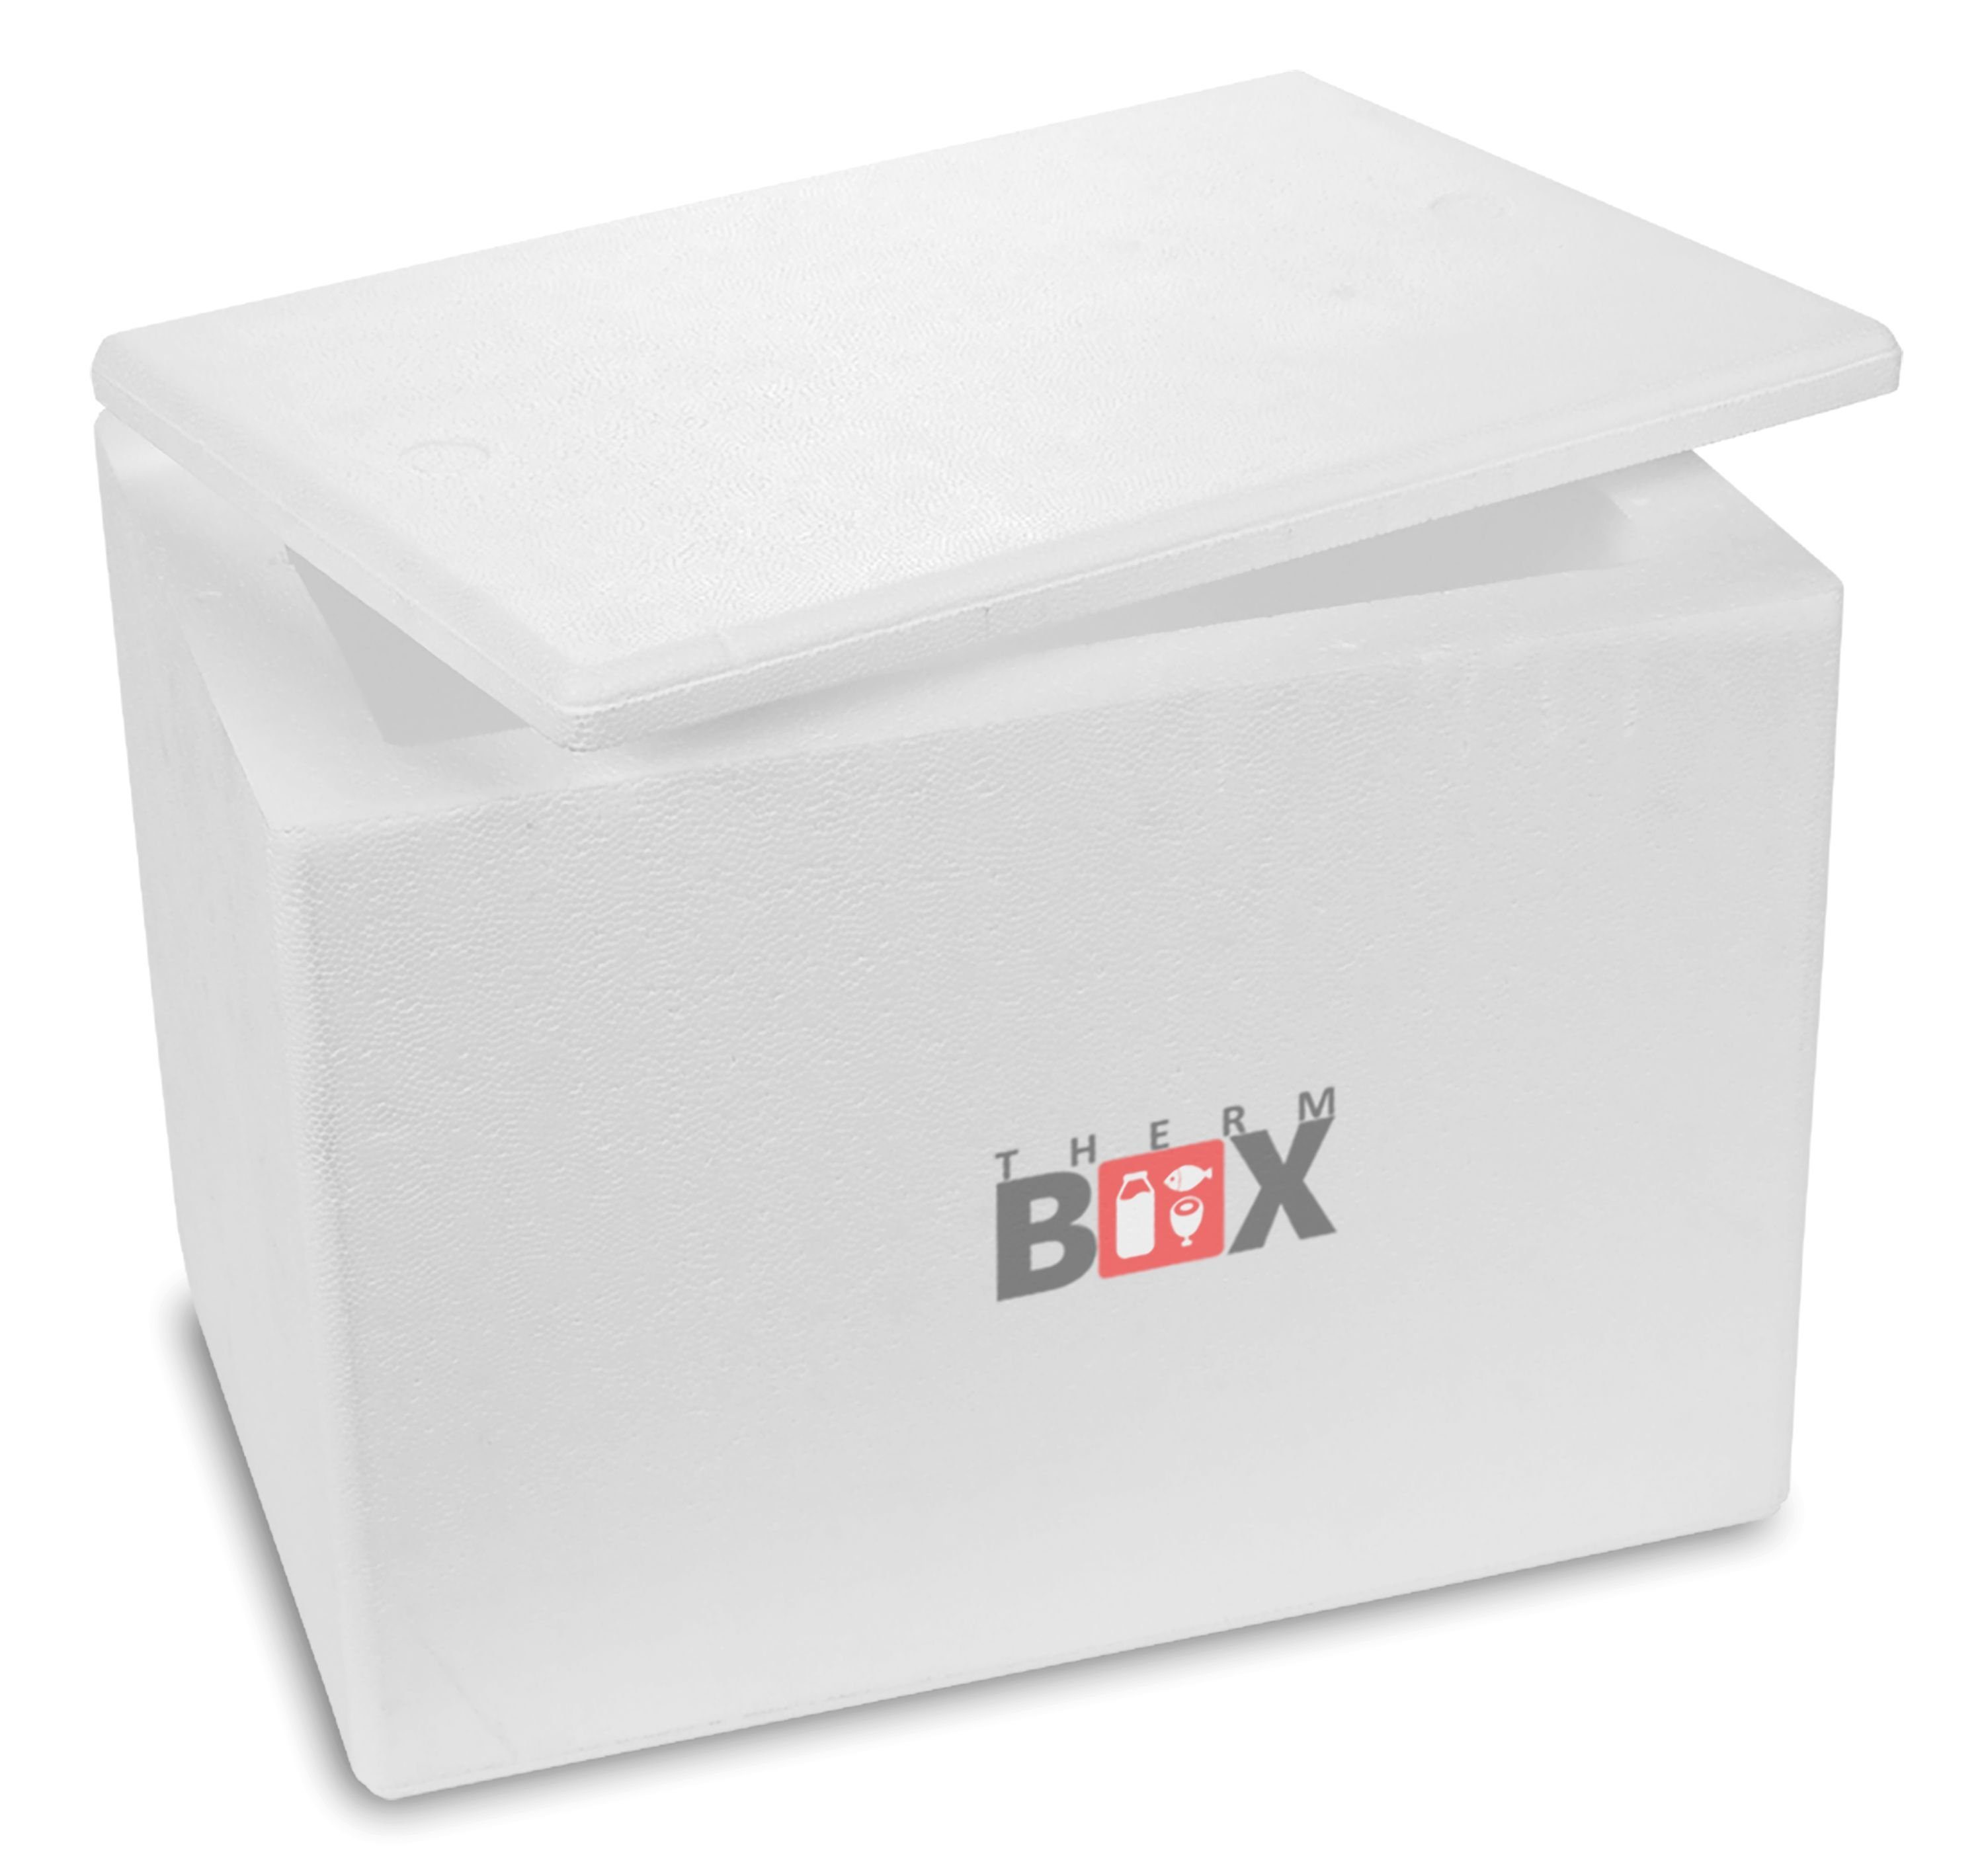 THERM-BOX Thermobehälter Styroporbox 24W Innen: 38x24x26cm Wand: 4cm 24,2L, Styropor-Verdichtet, (0-tlg., Box mit Deckel im Karton), Isolierbox Thermobox Kühlbox Warmhaltebox Wiederverwendbar